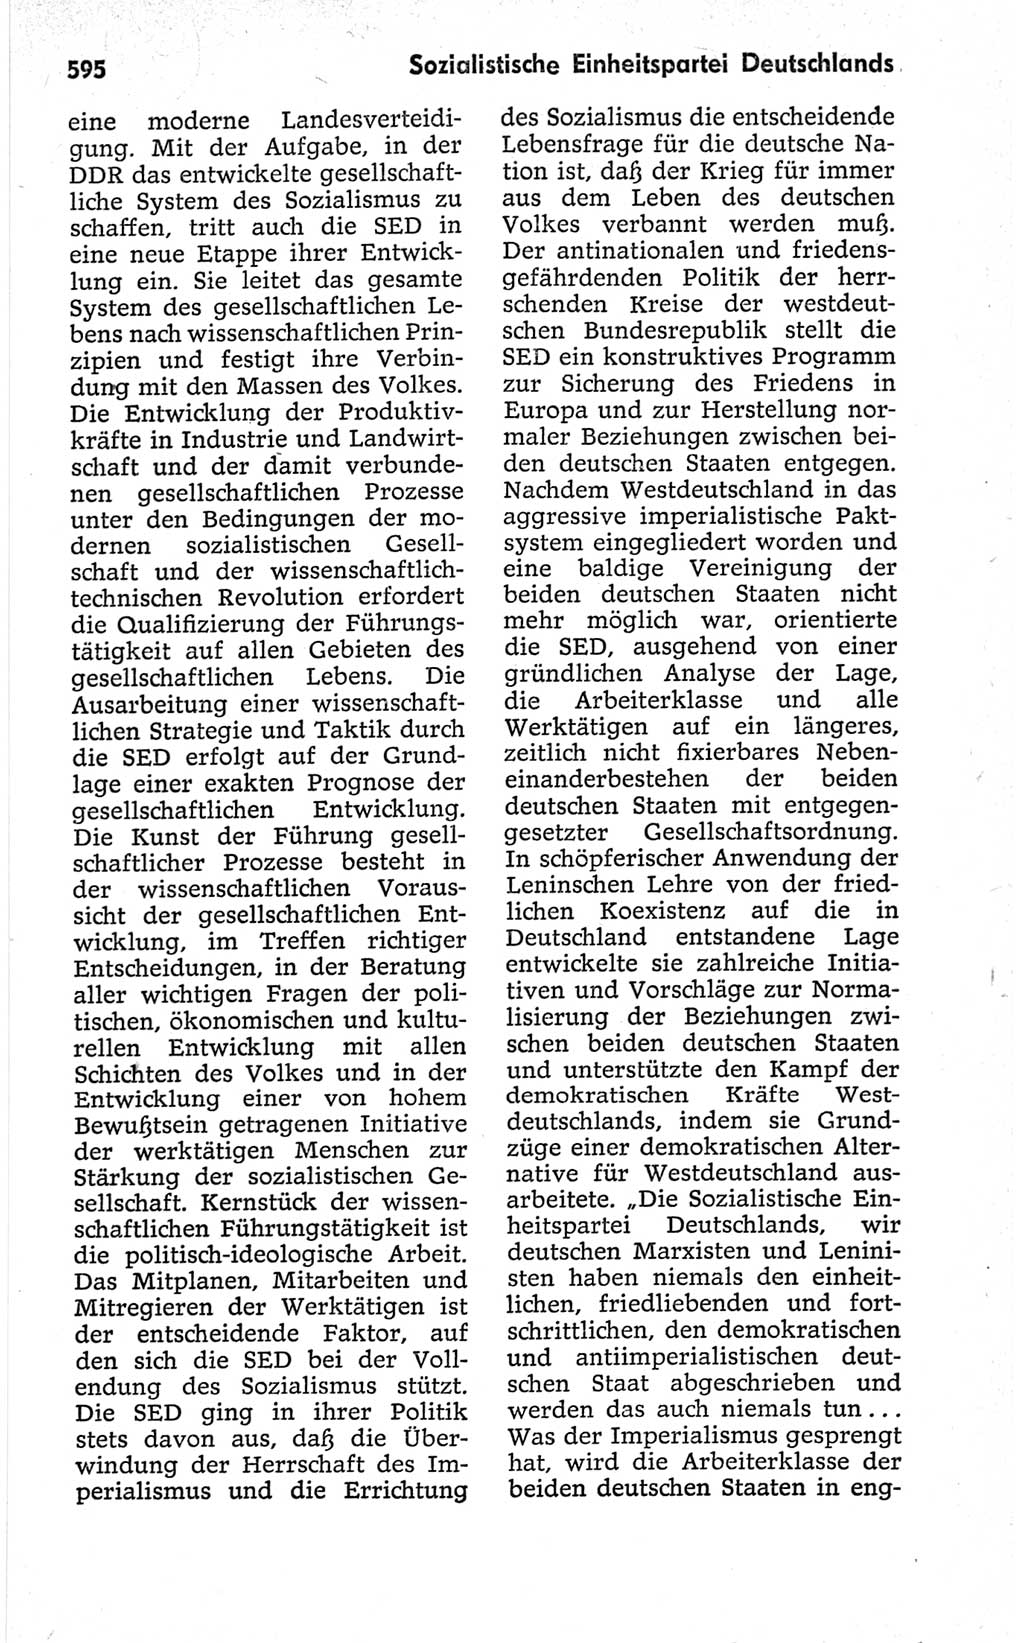 Kleines politisches Wörterbuch [Deutsche Demokratische Republik (DDR)] 1967, Seite 595 (Kl. pol. Wb. DDR 1967, S. 595)